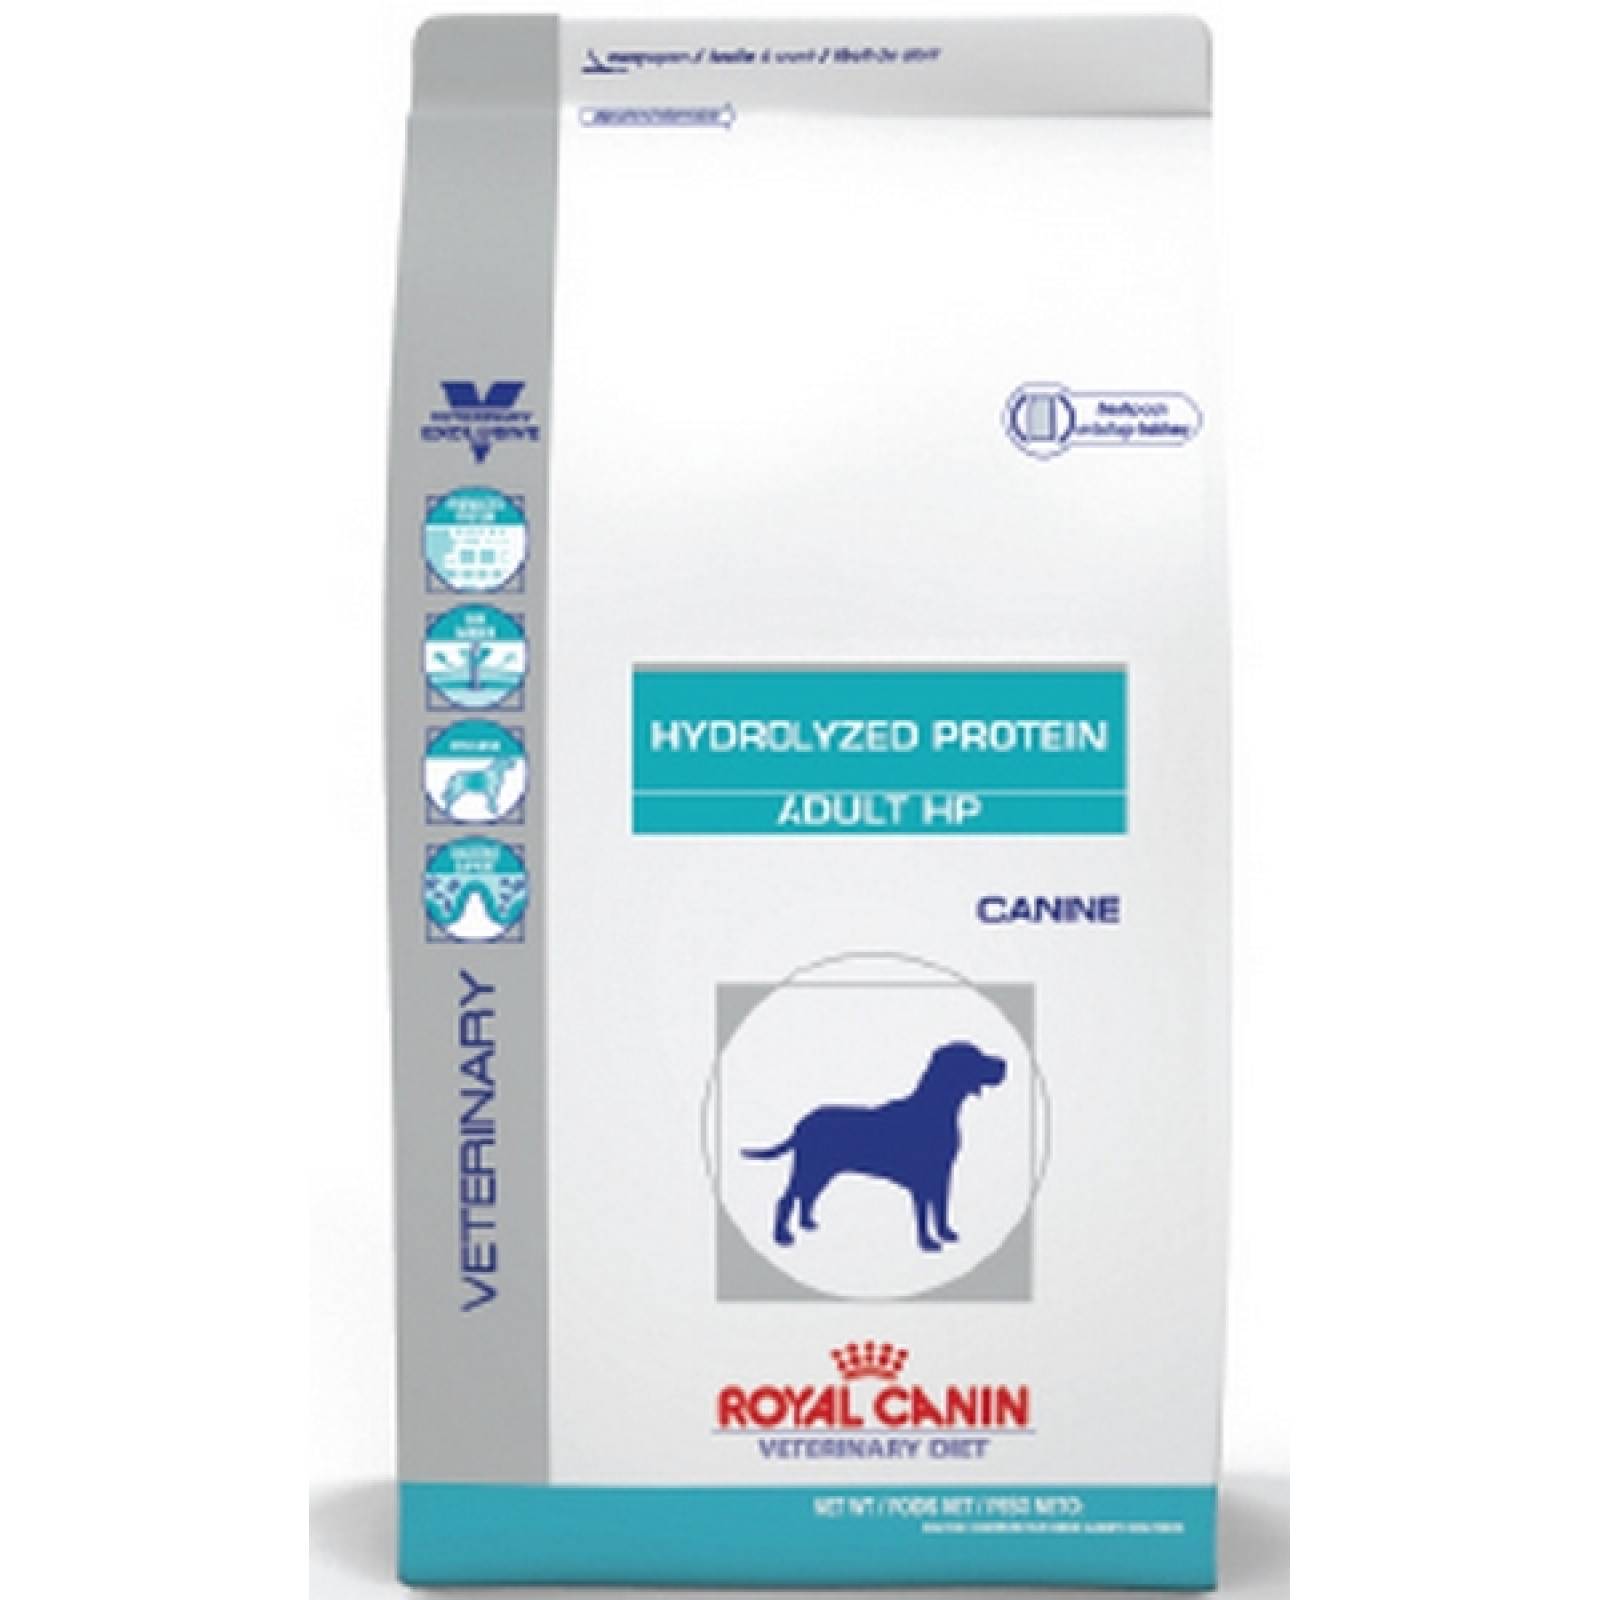 Royal Canin Dieta Veterinaria Alimento para Perro Adulto Proteina Hidrolizada HP para la Intolerancia al Alimento 11.5 Kg